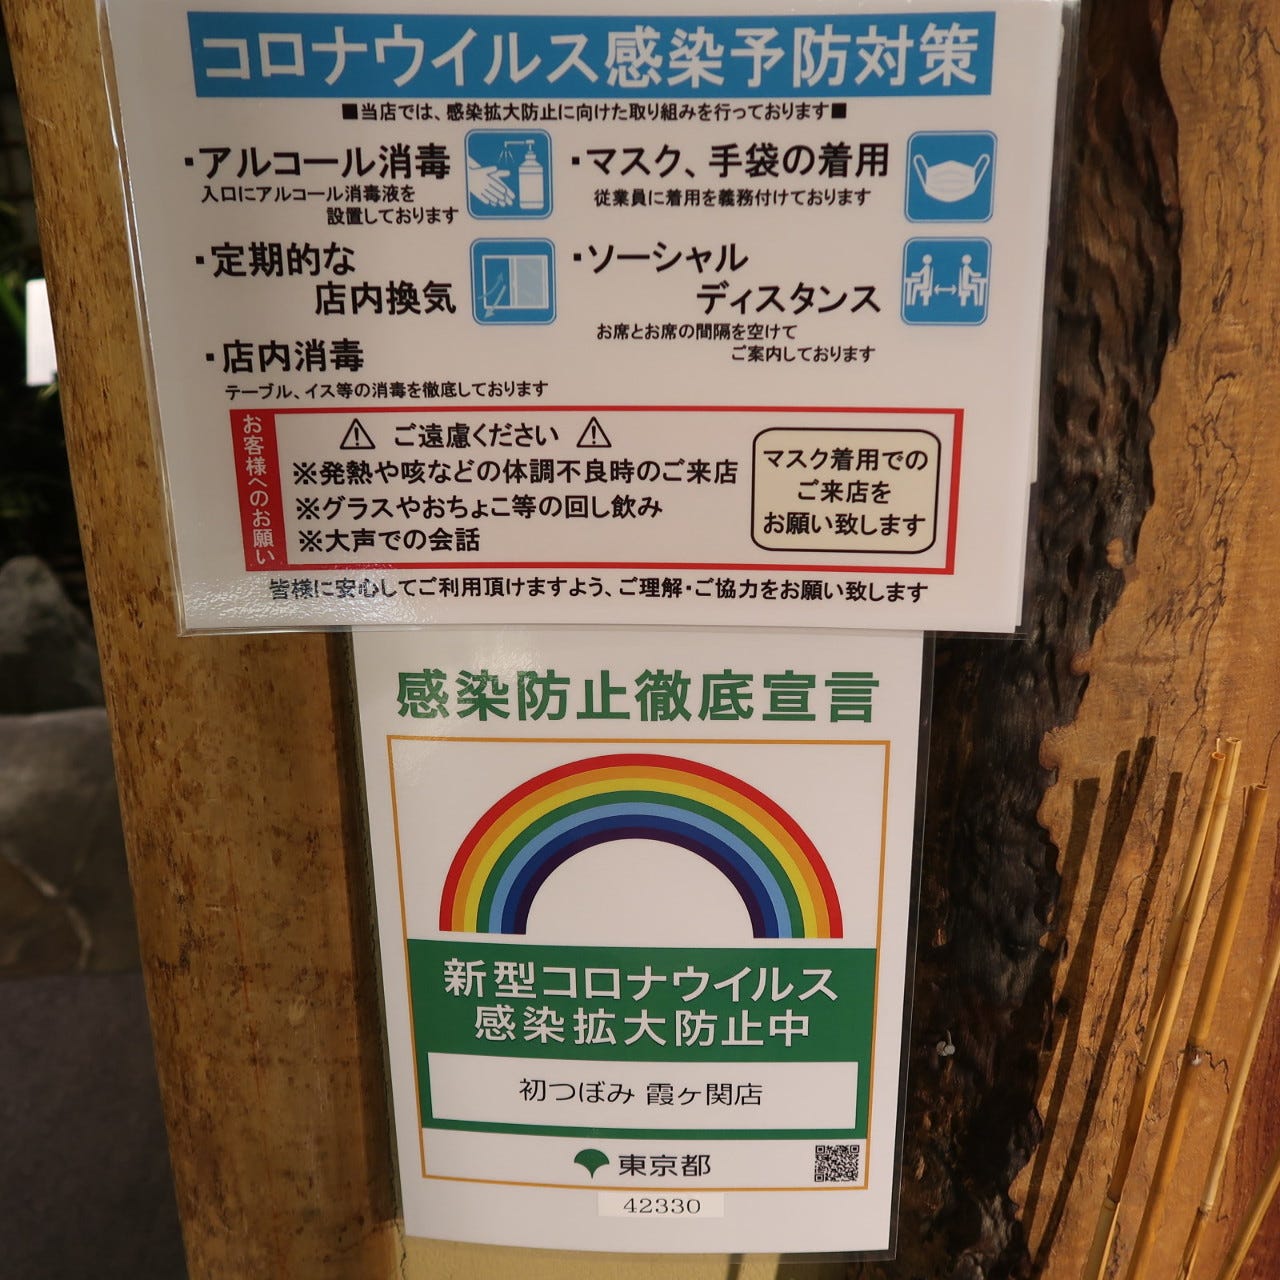 東京都による感染防止策の実施推進店舗です。